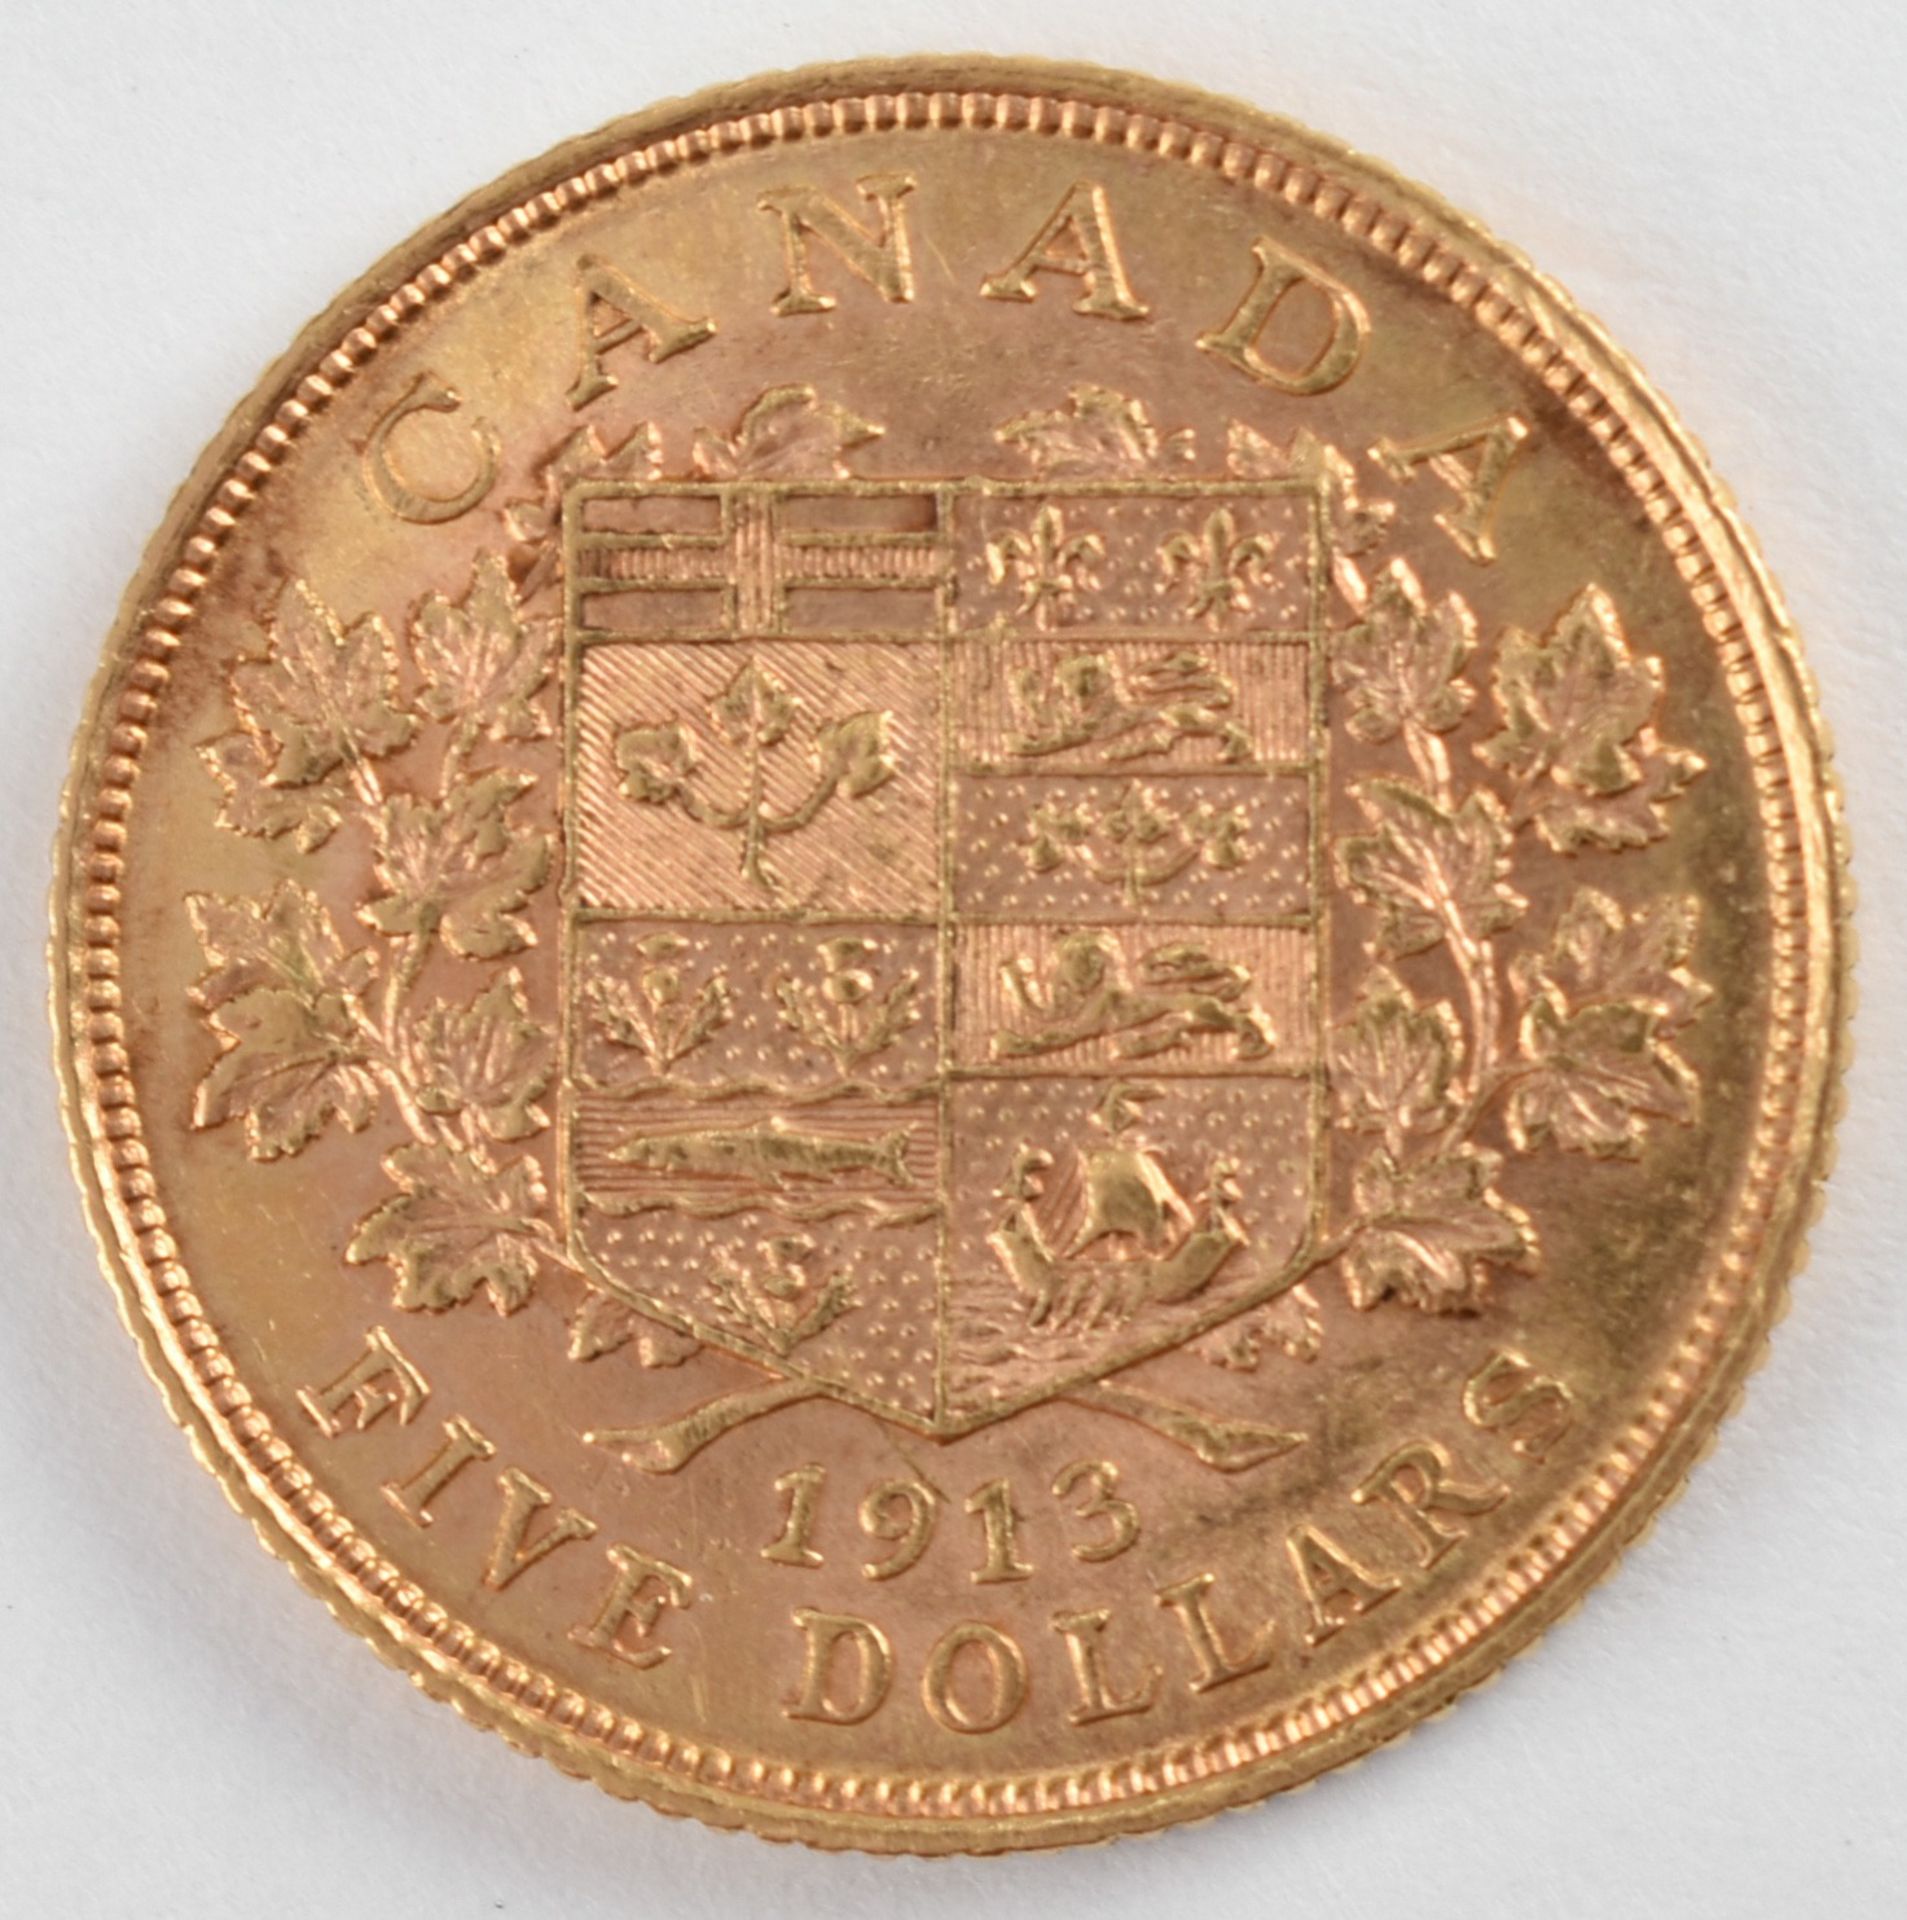 Goldmünze Kanada 1913 5 Dollars in Gold, 900/1000, 8,359 g, av. König George V. Brustbild mit - Image 2 of 3